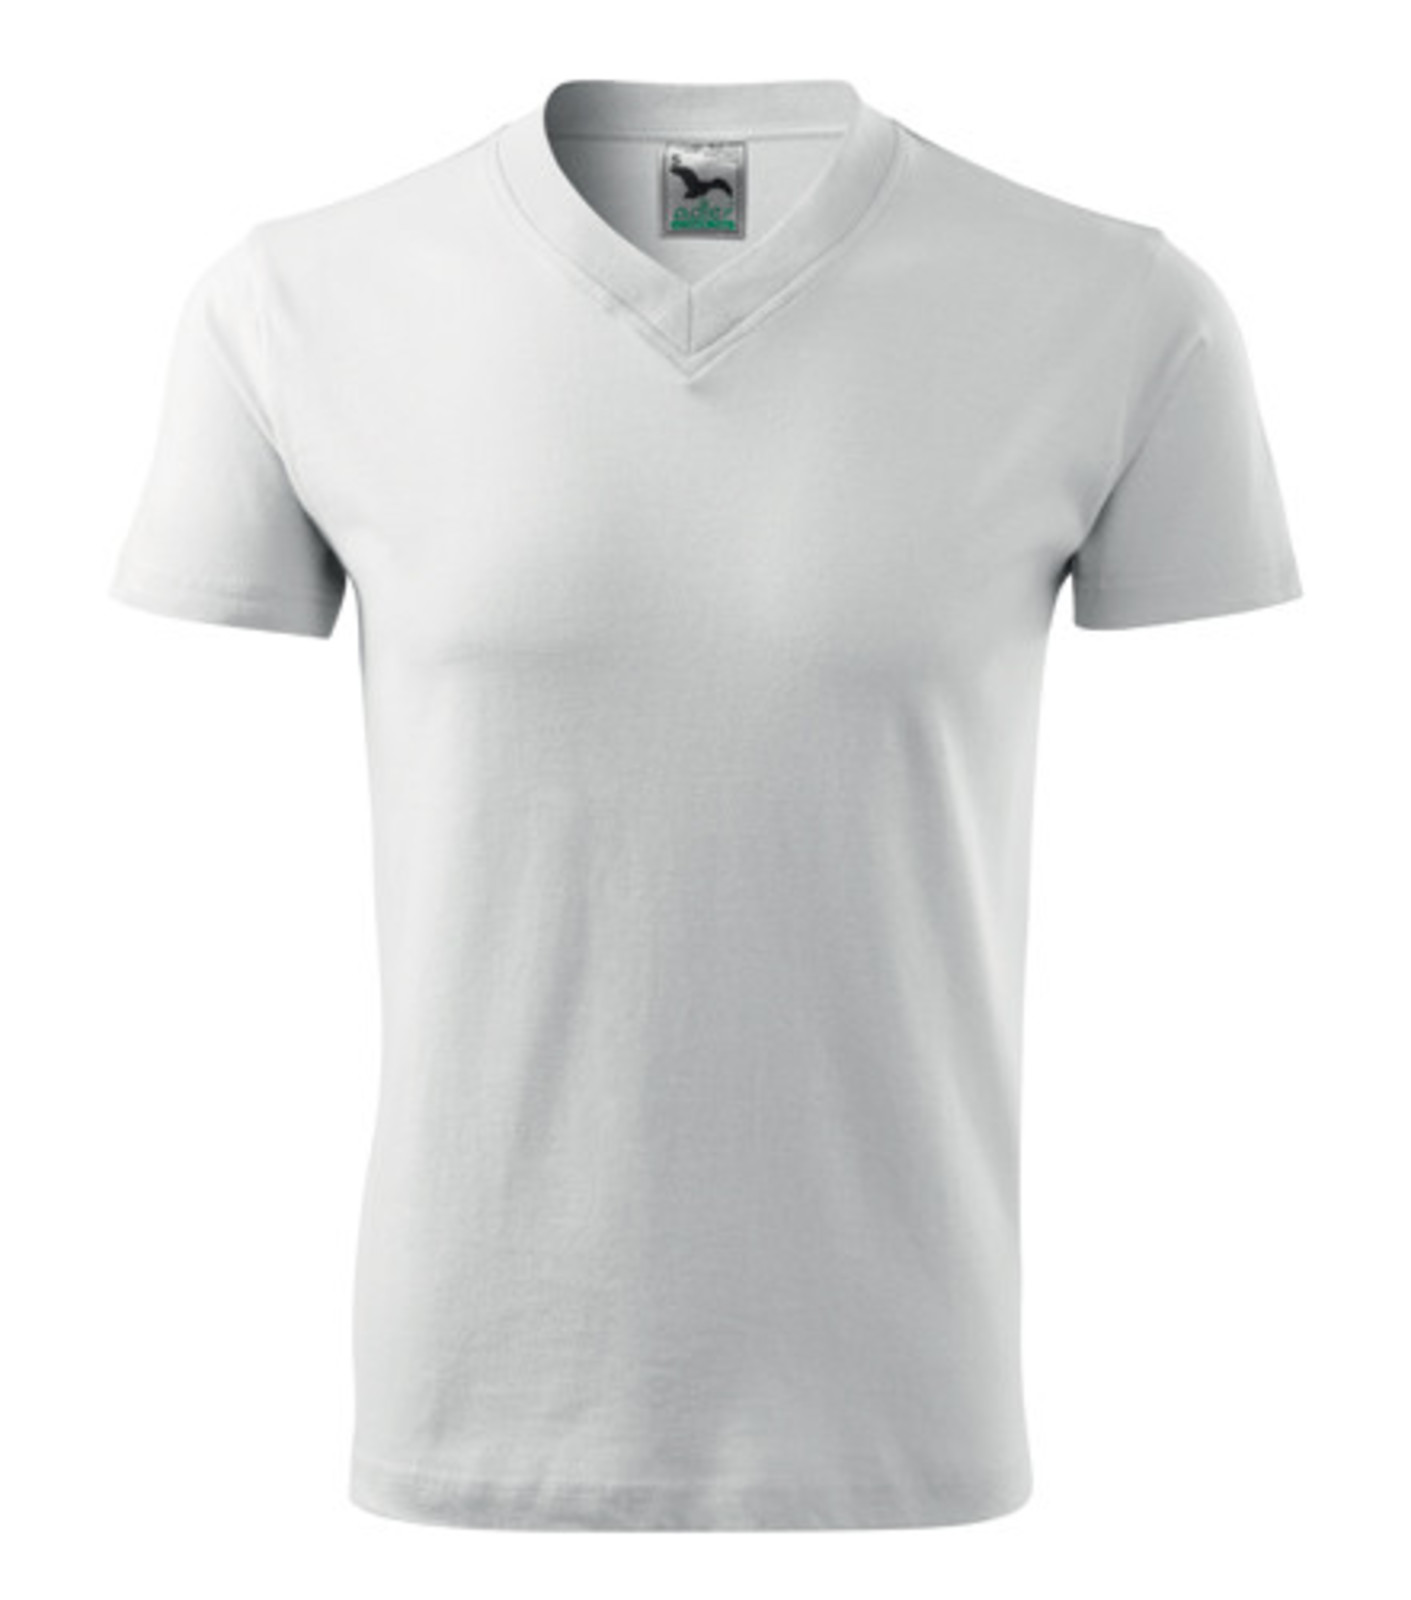 Unisex tričko s výstrihom Adler V-Neck 102 - veľkosť: XL, farba: biela